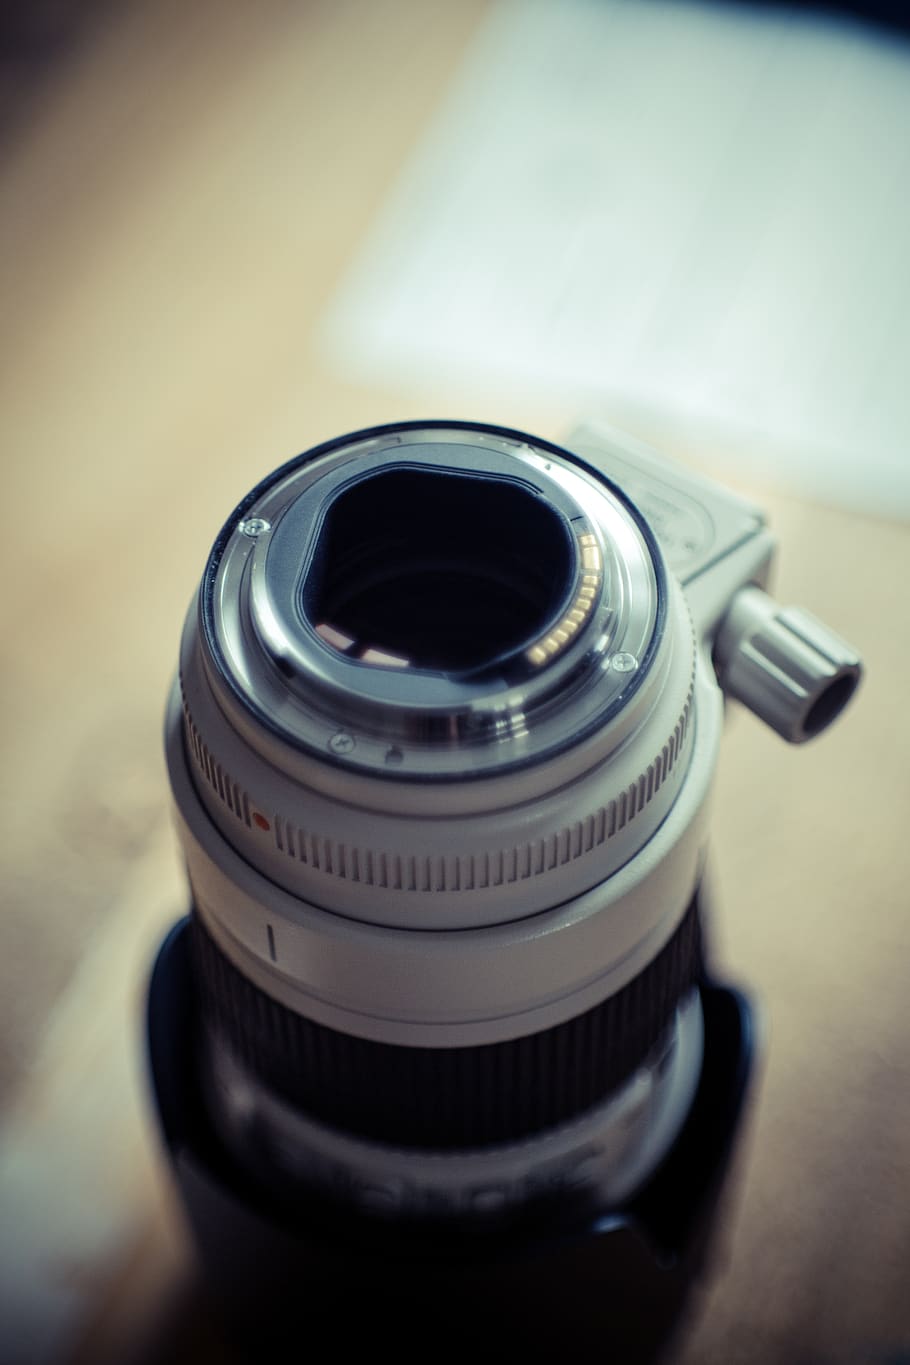 câmera, lente, preto, prata, fotografia, desfoque, temas de fotografia, tecnologia, câmera - equipamento fotográfico, lente - instrumento óptico